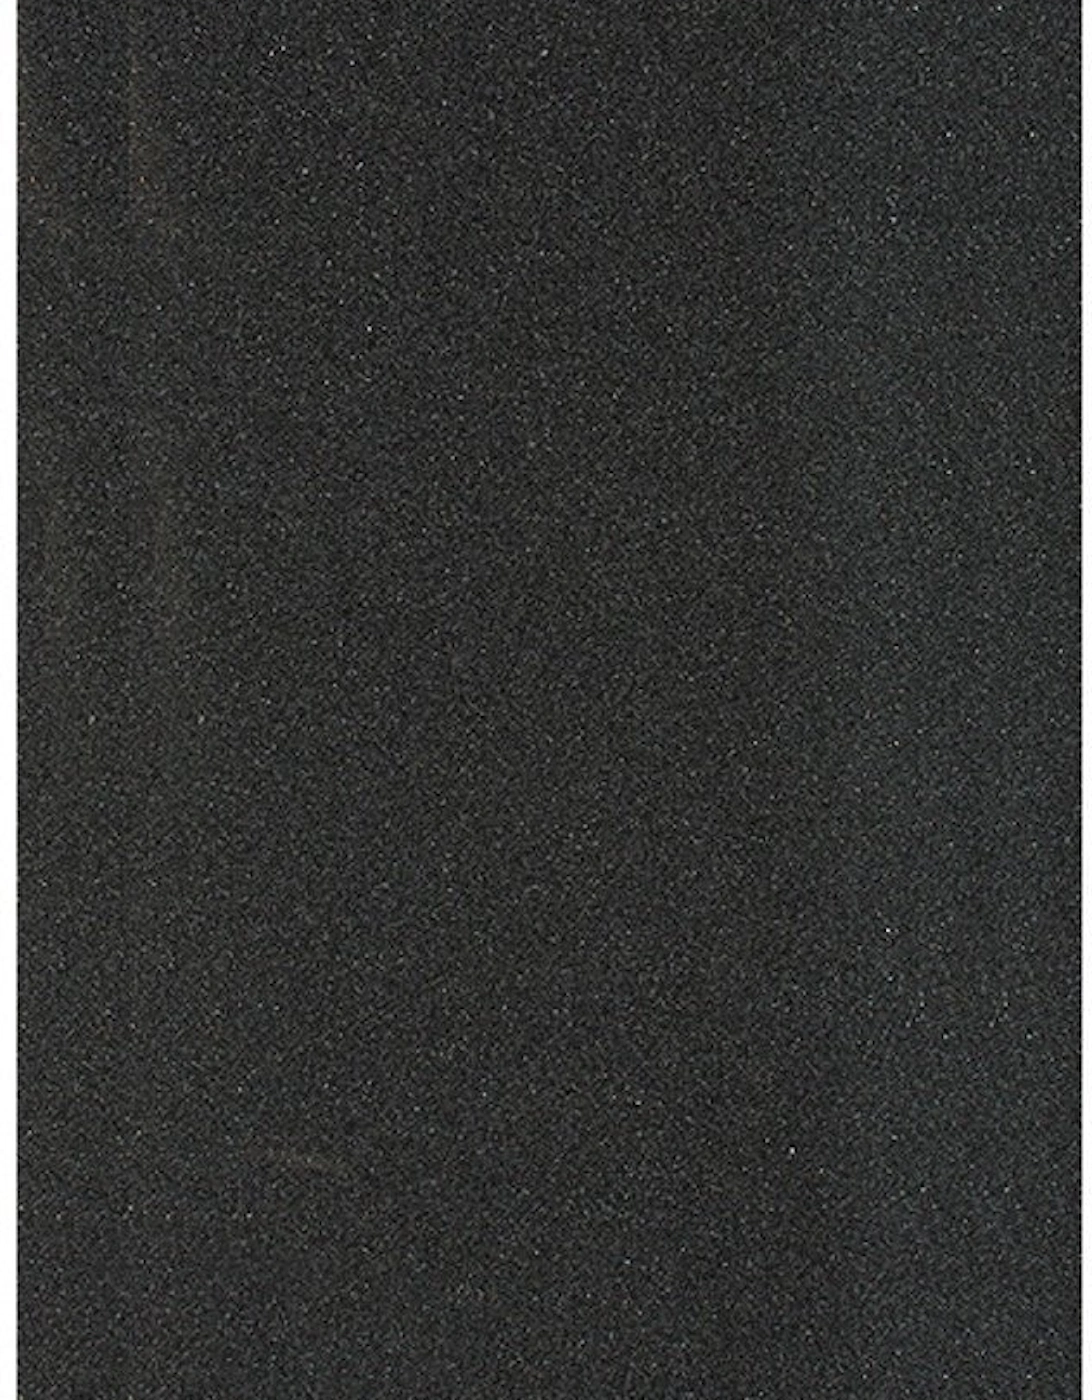 12" Width Griptape Sheet - Black, 2 of 1